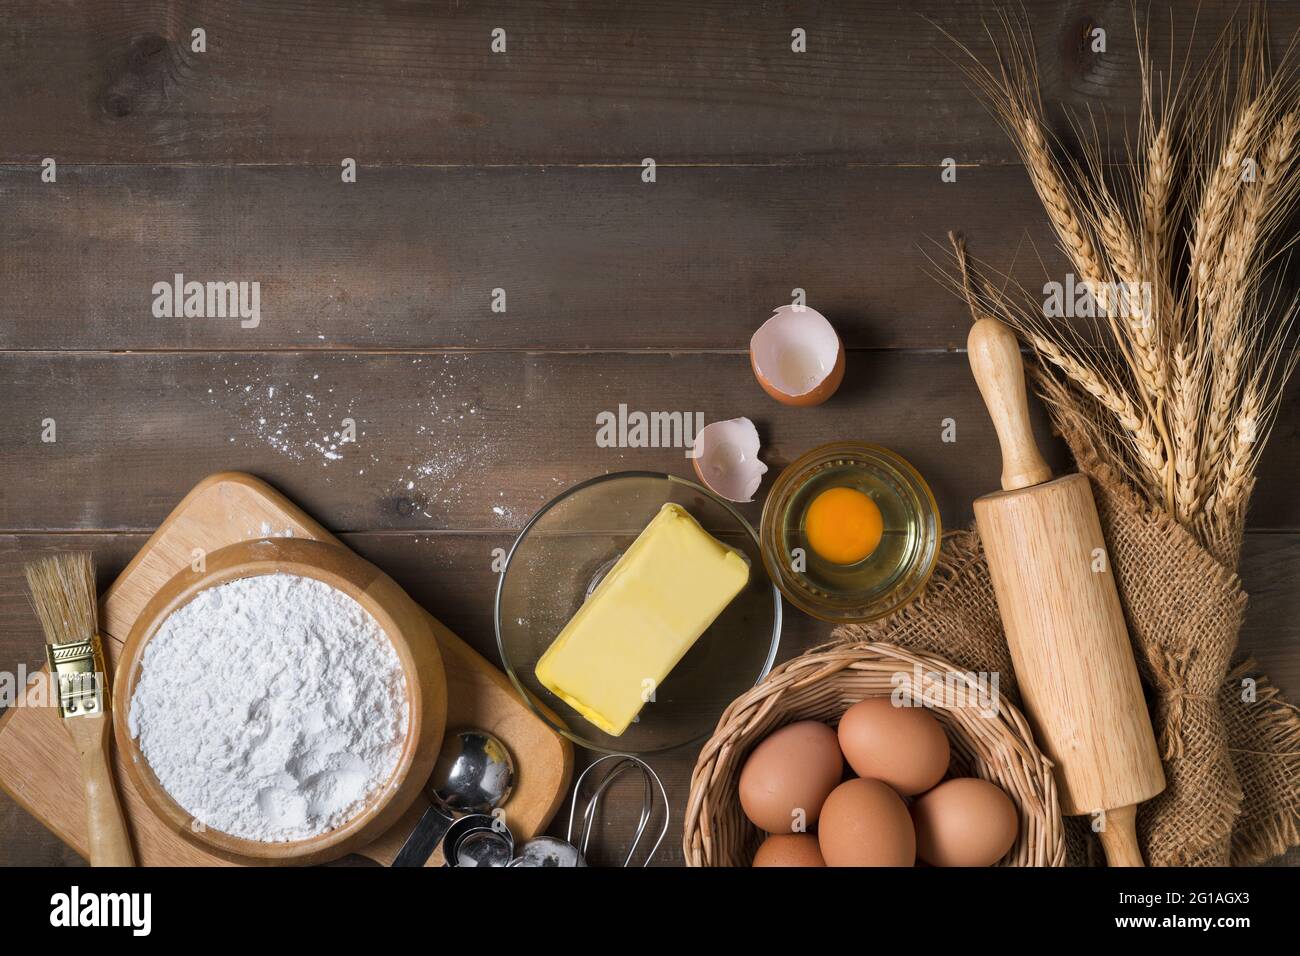 Brotmehl mit frischem Ei, ungesalzene Butter und Zubehör Bäckerei auf Holz Hintergrund, bereiten für hausgemachte Bäckerei Konzept Stockfoto